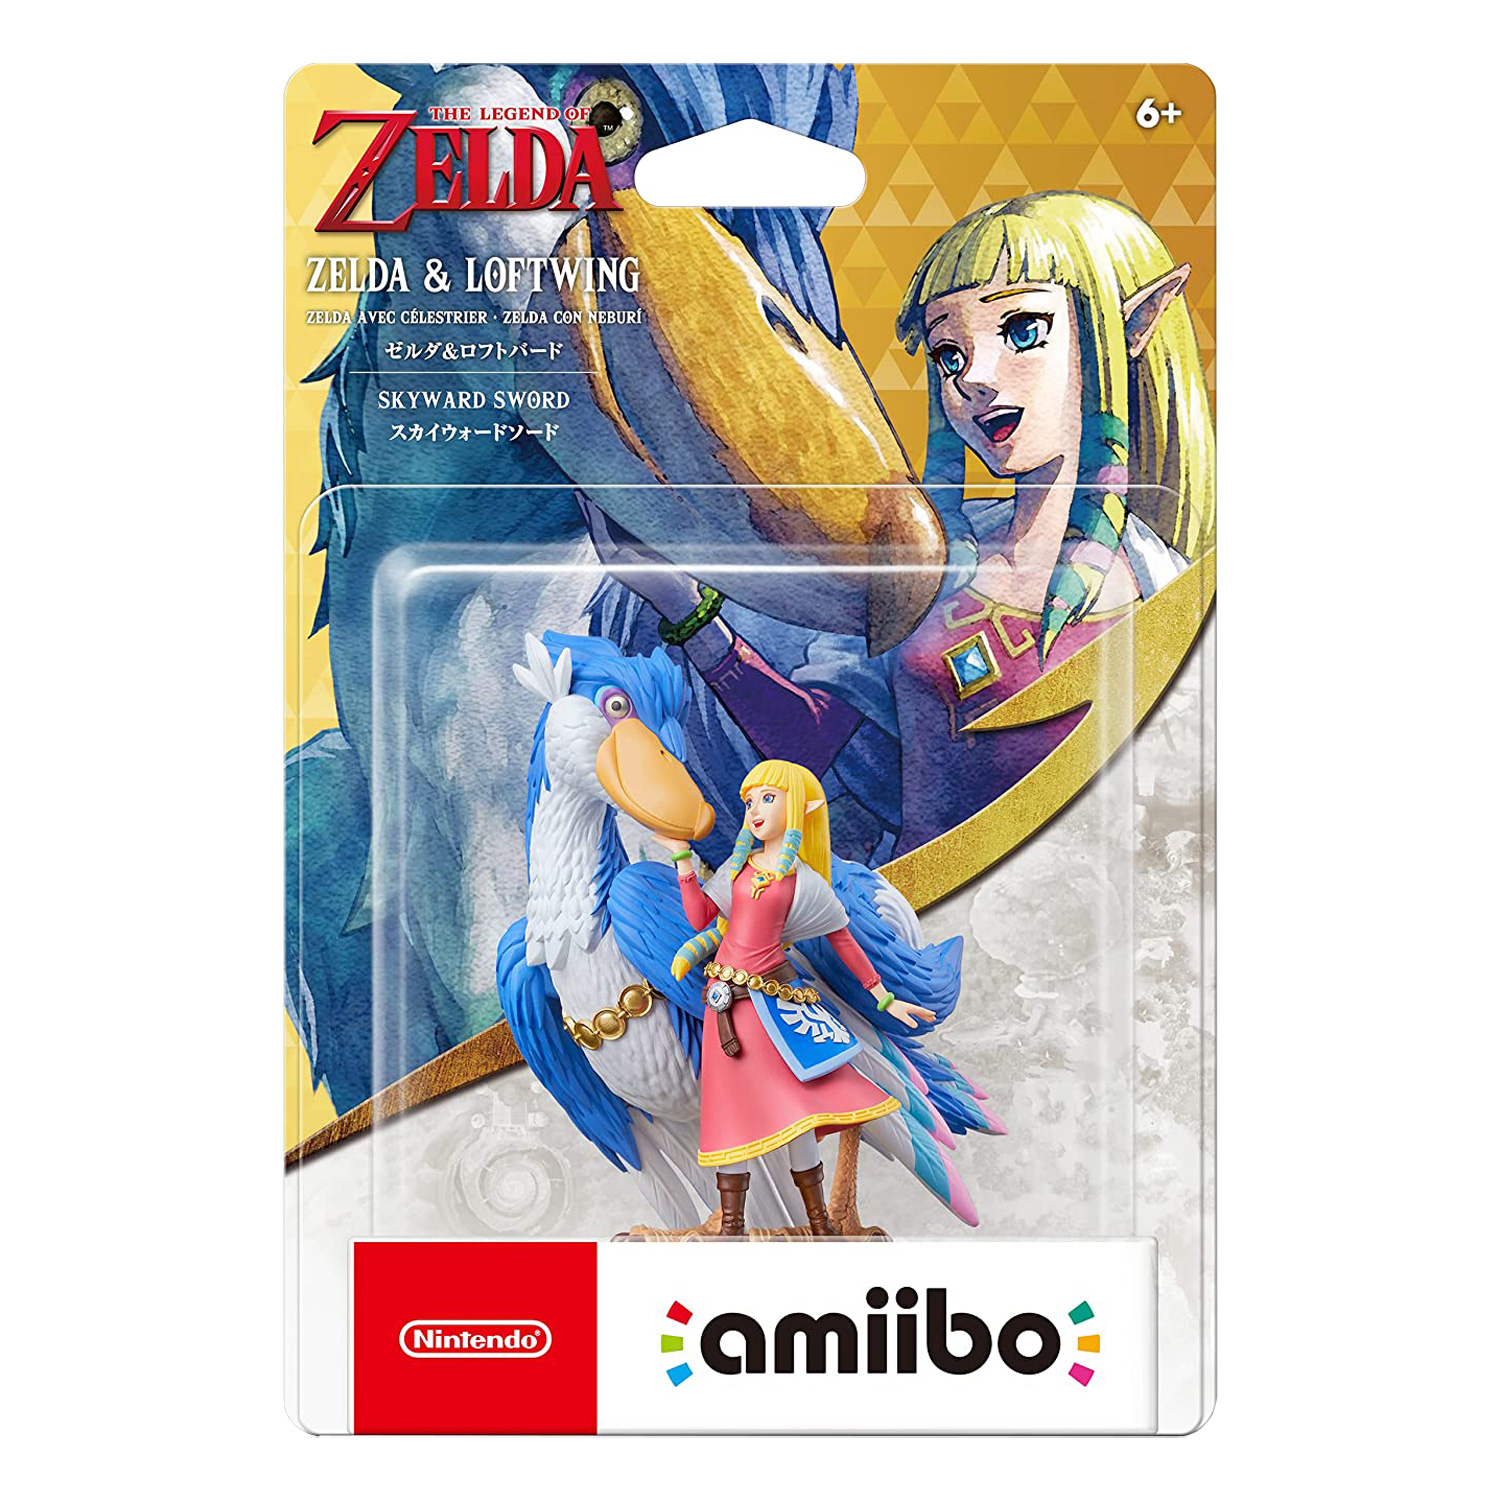 Boneco Amiibo Nintendo Zelda and Loftwing (NVL-C-AKAW)